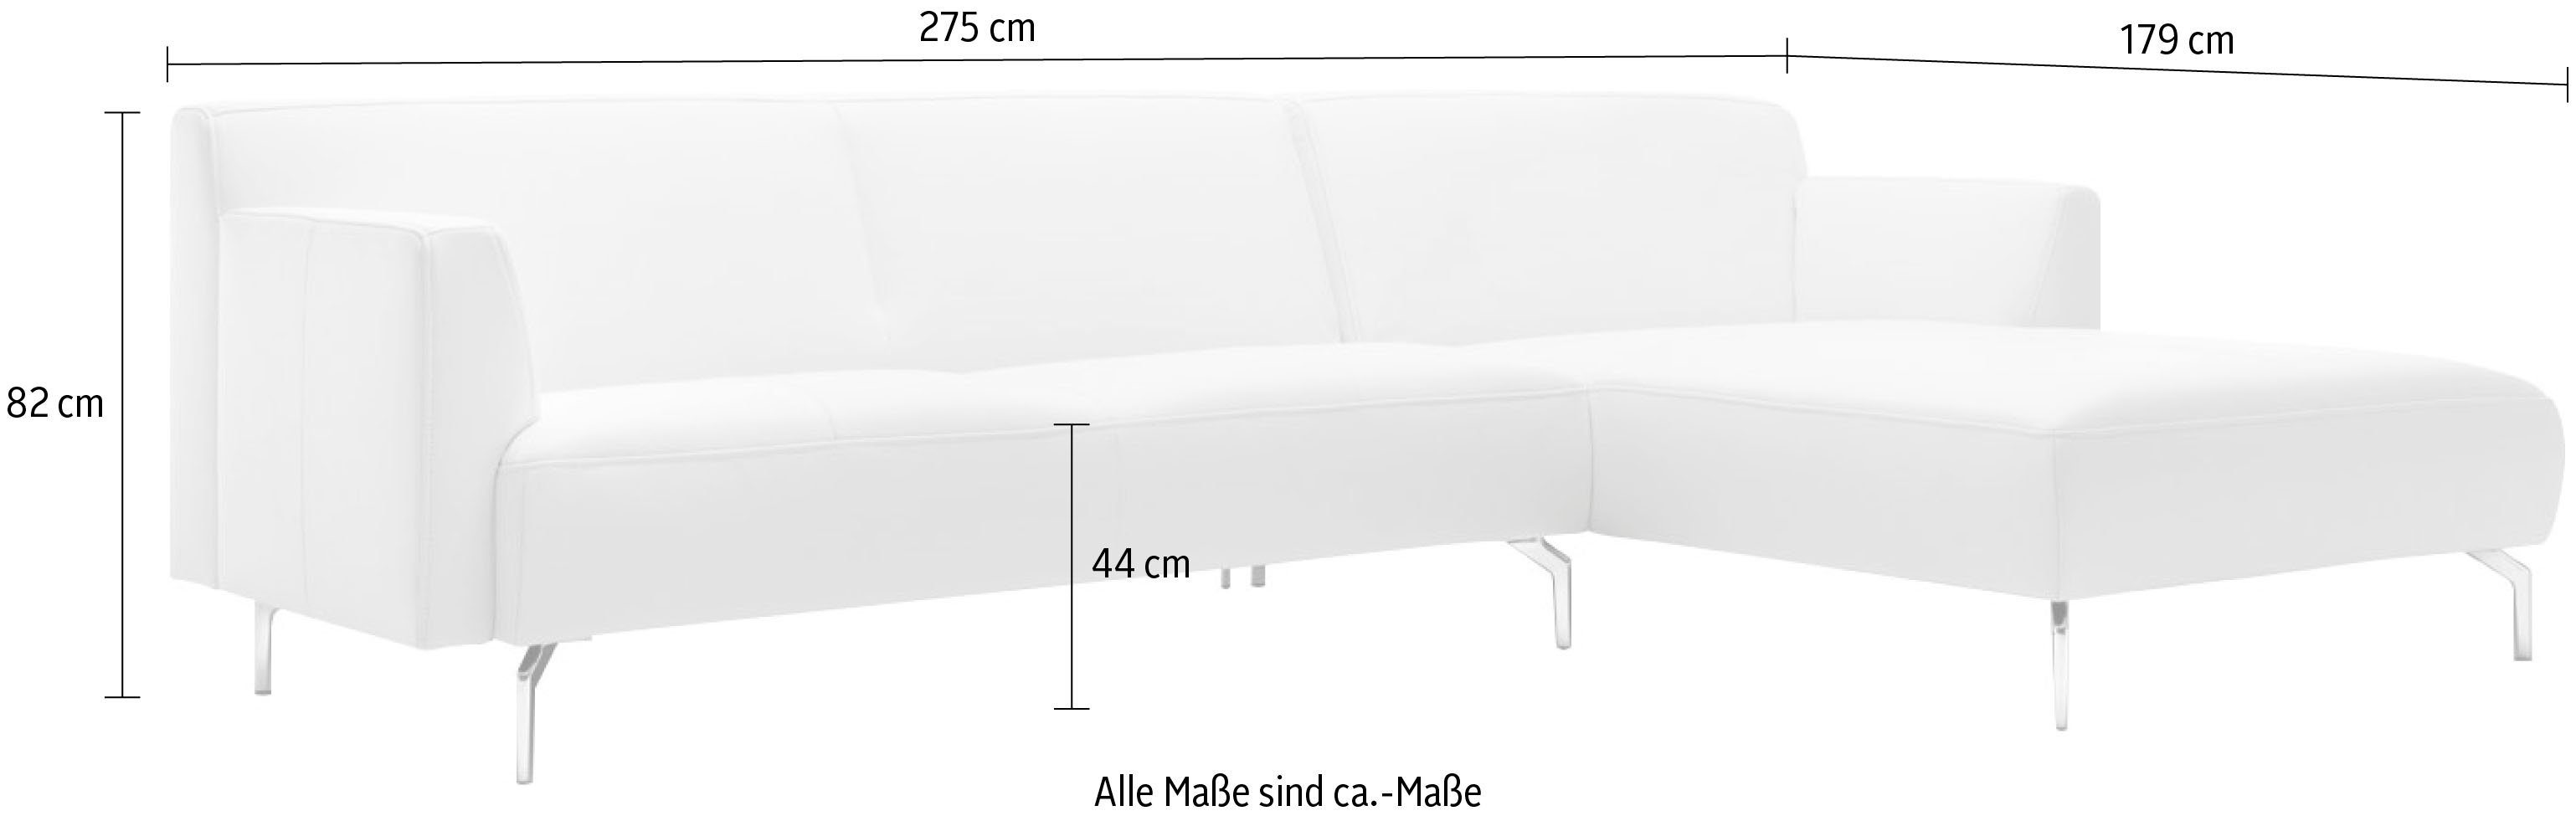 hülsta sofa Ecksofa hs.446, schwereloser cm 275 Optik, minimalistischer, in Breite